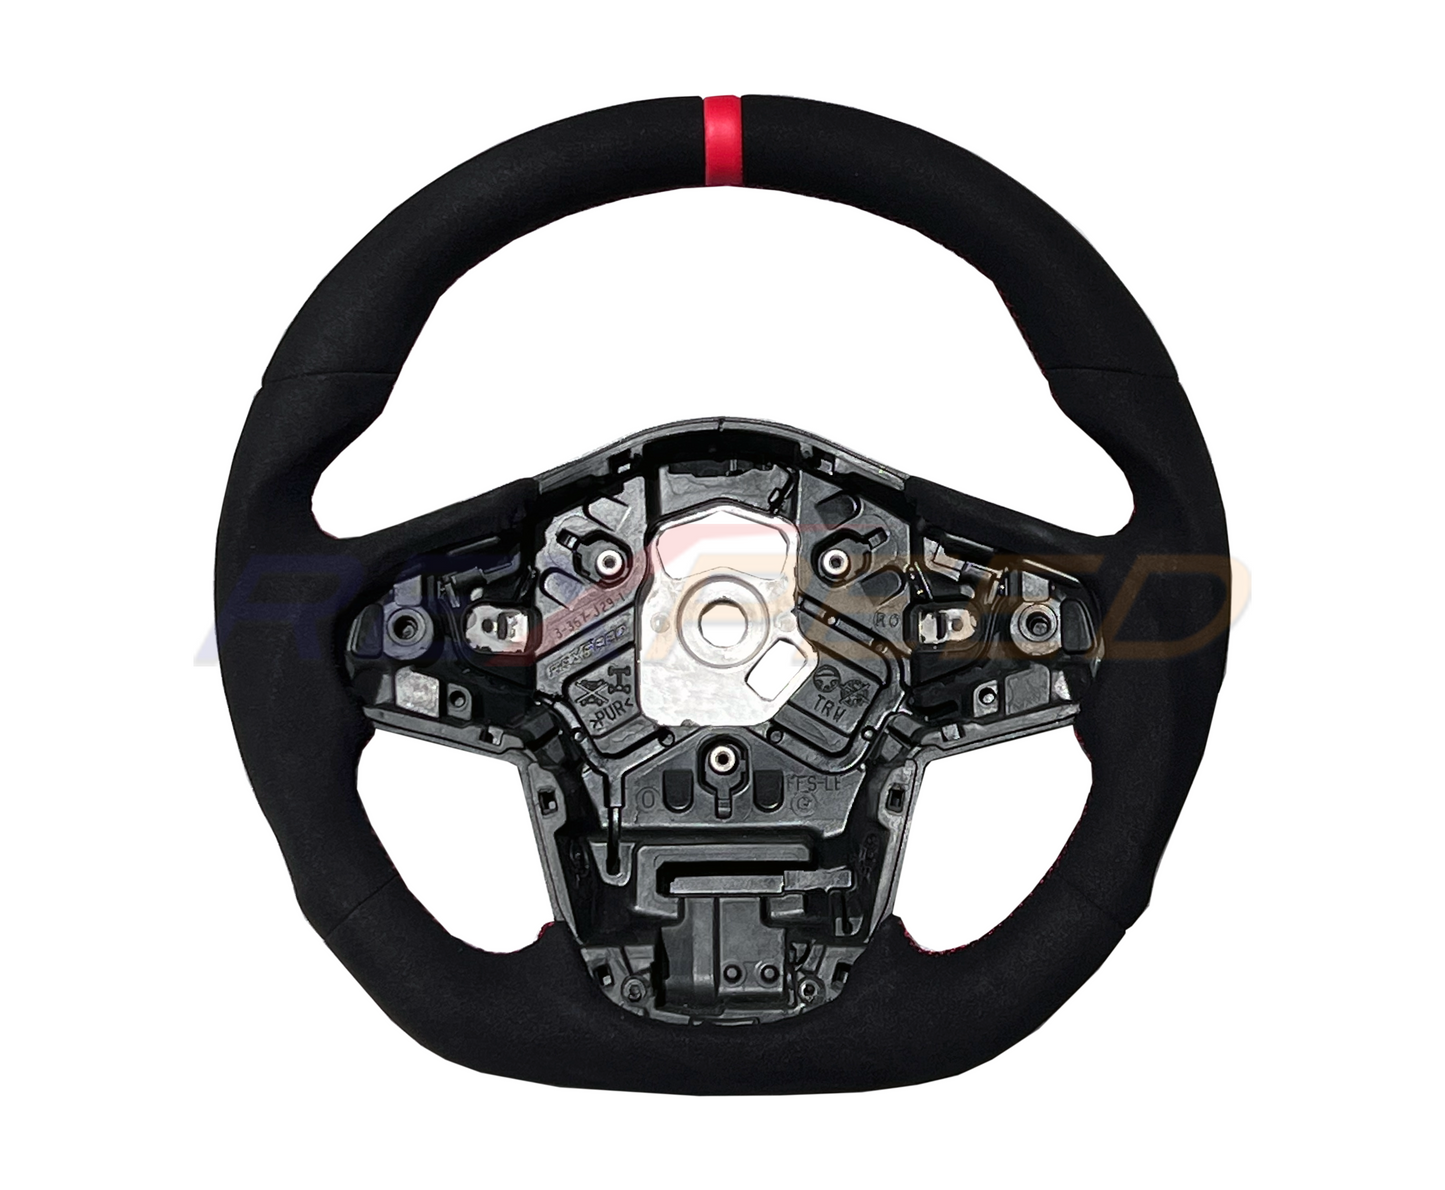 Rexpeed 2020+ Supra GR Black Suede Steering Wheel | TS71